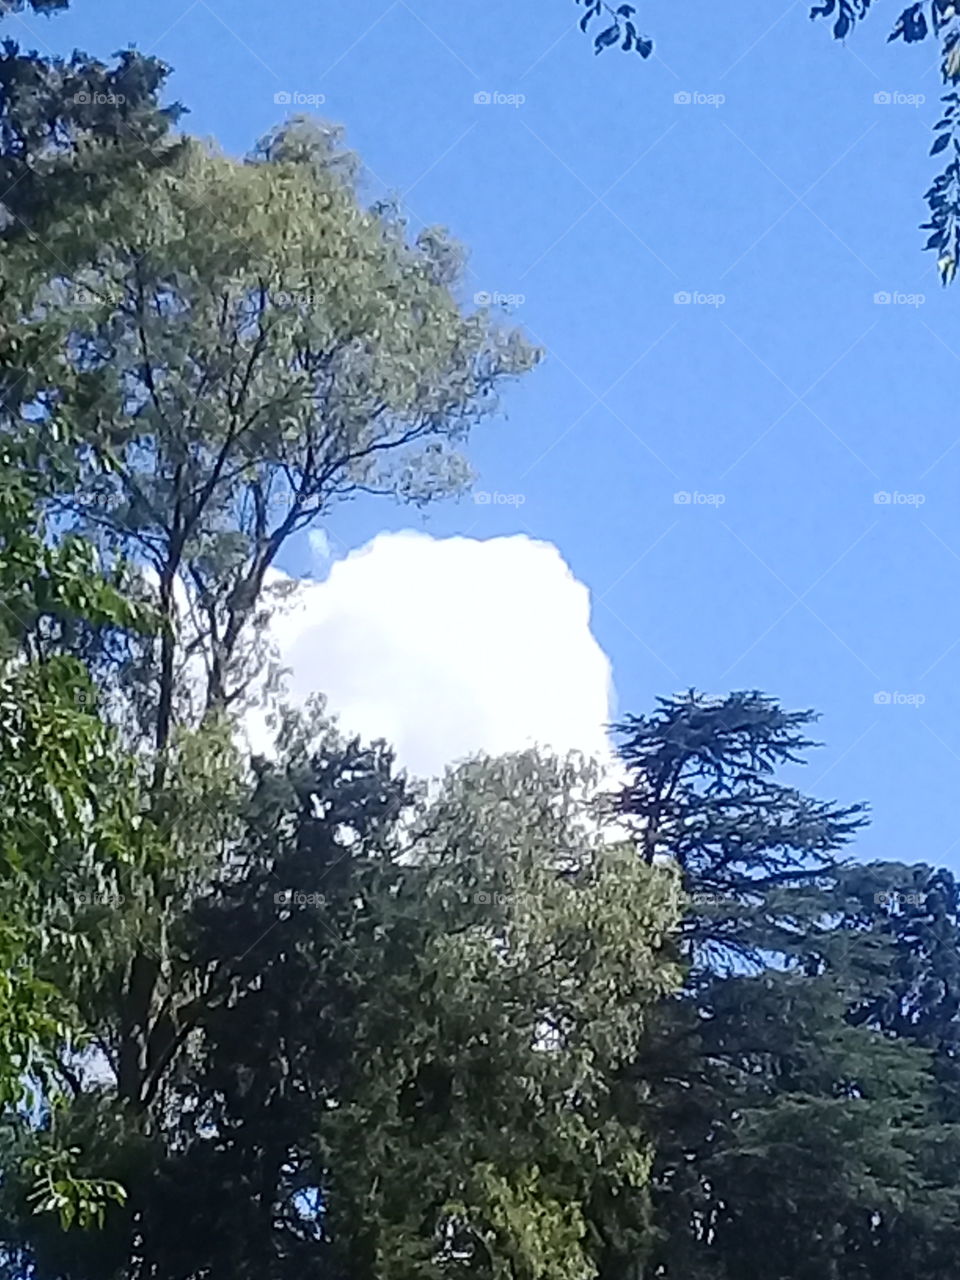 nube blanca asomando entre el follaje espeso de un bosque de coníferas en un cielo de verano.